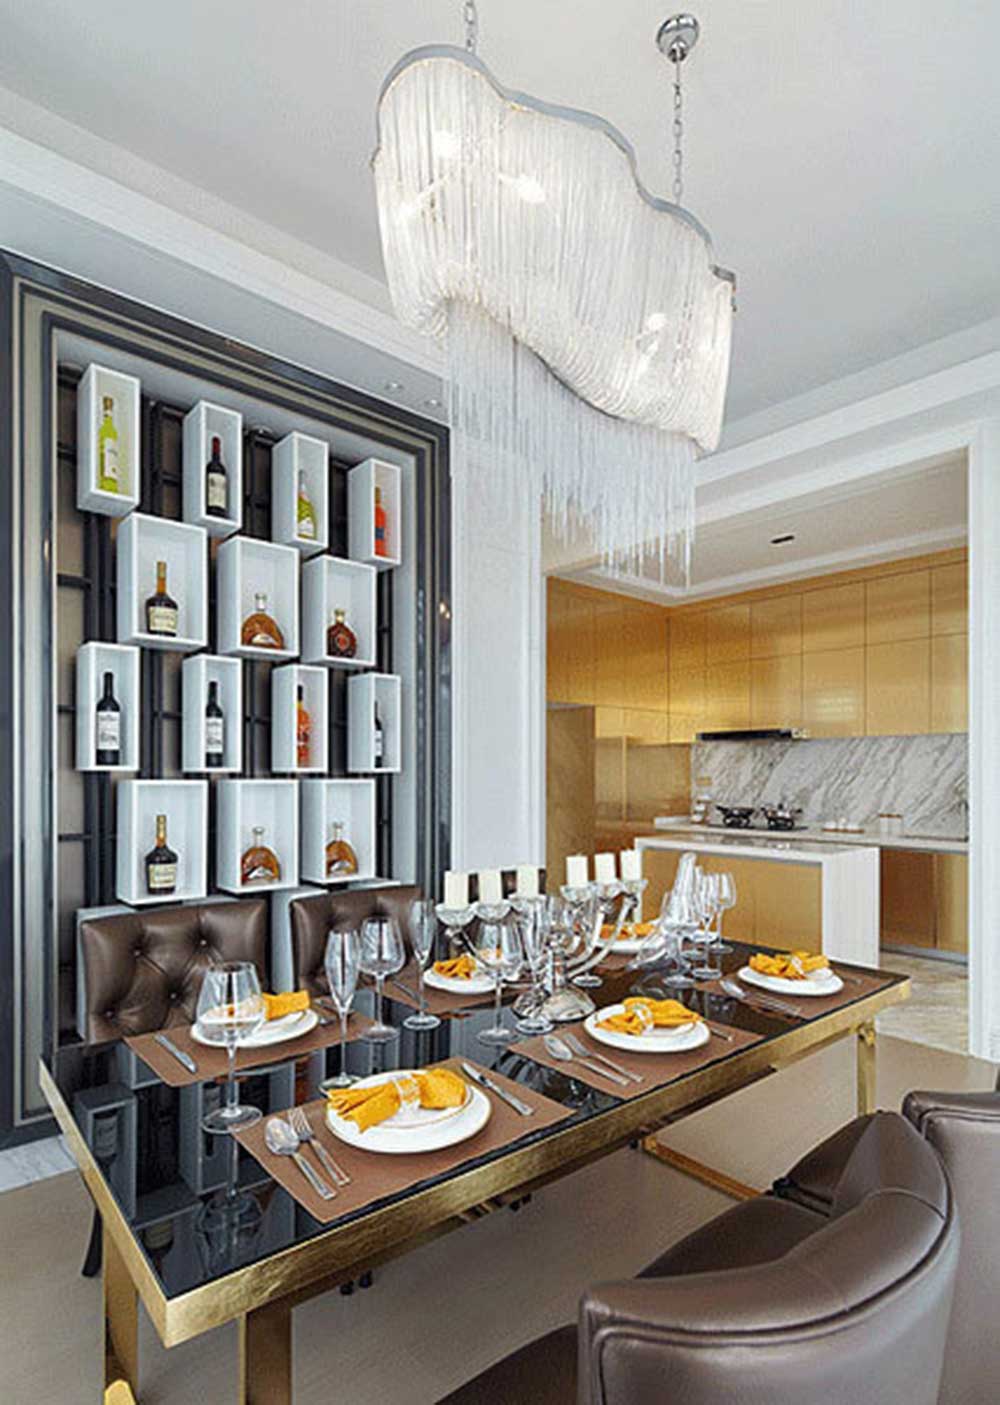 餐厅部分凸显了精品的生活追求，立面酒柜的设计呼应了沙发背景墙面的设计。